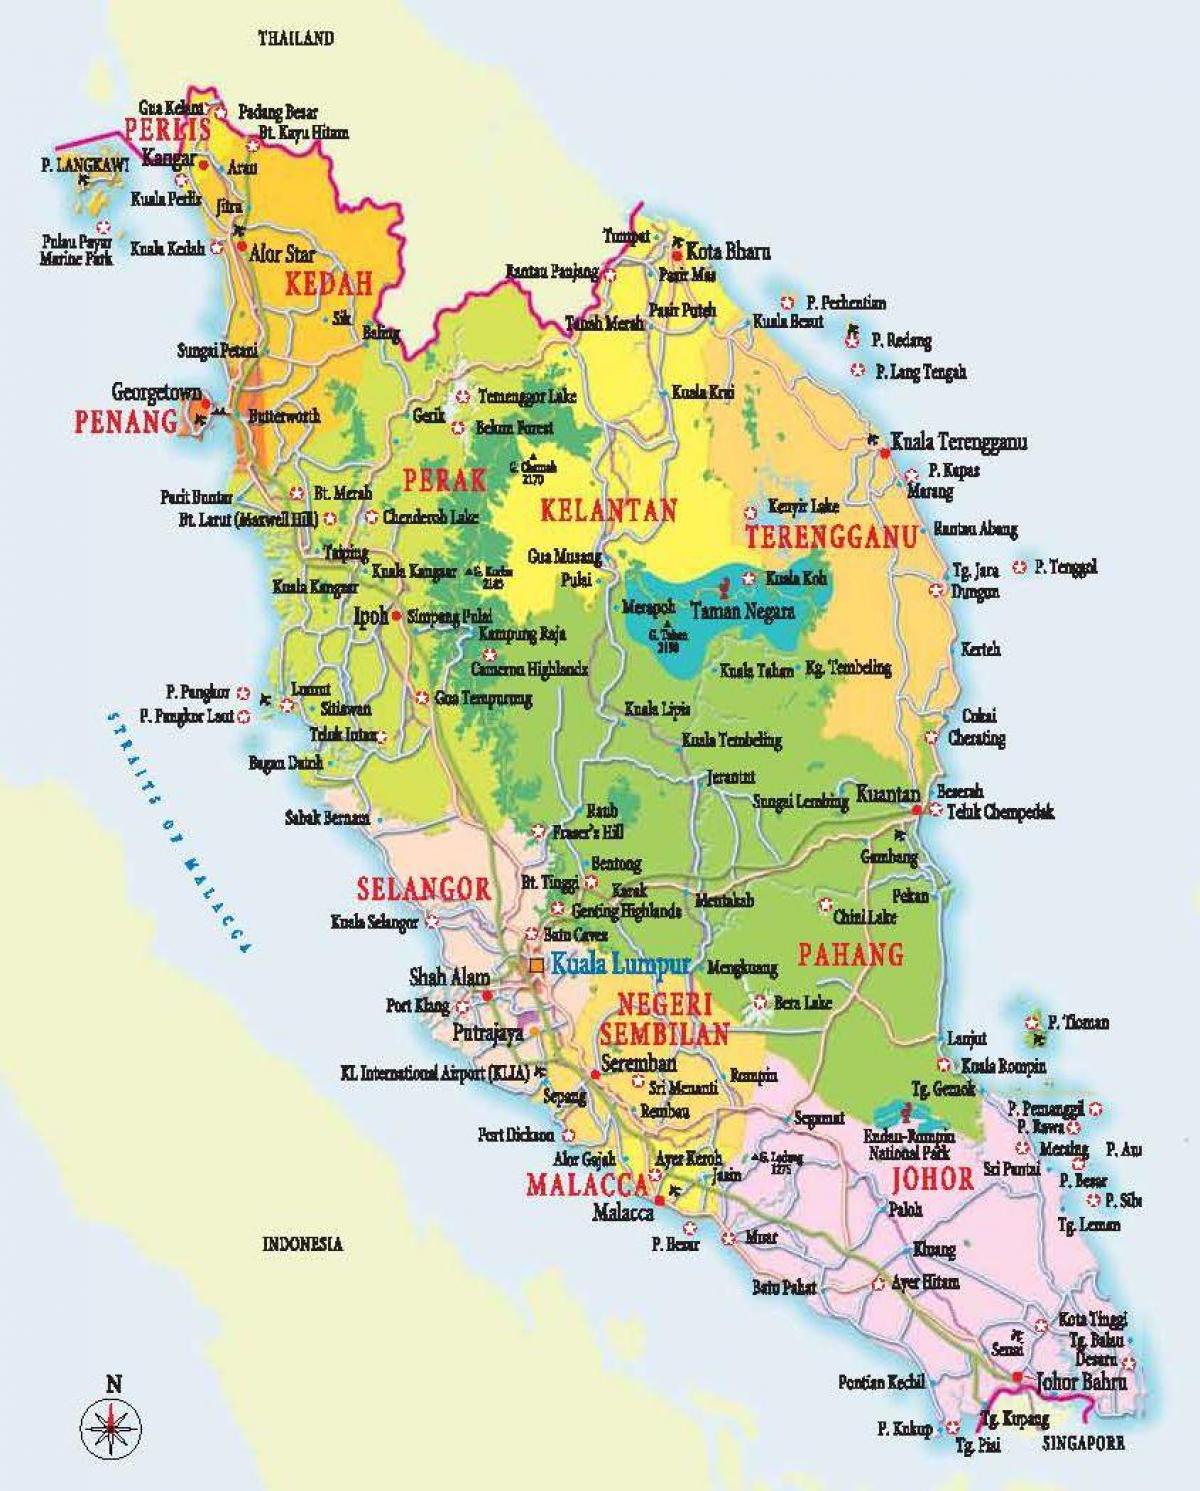 zemljevid zahodno malezija